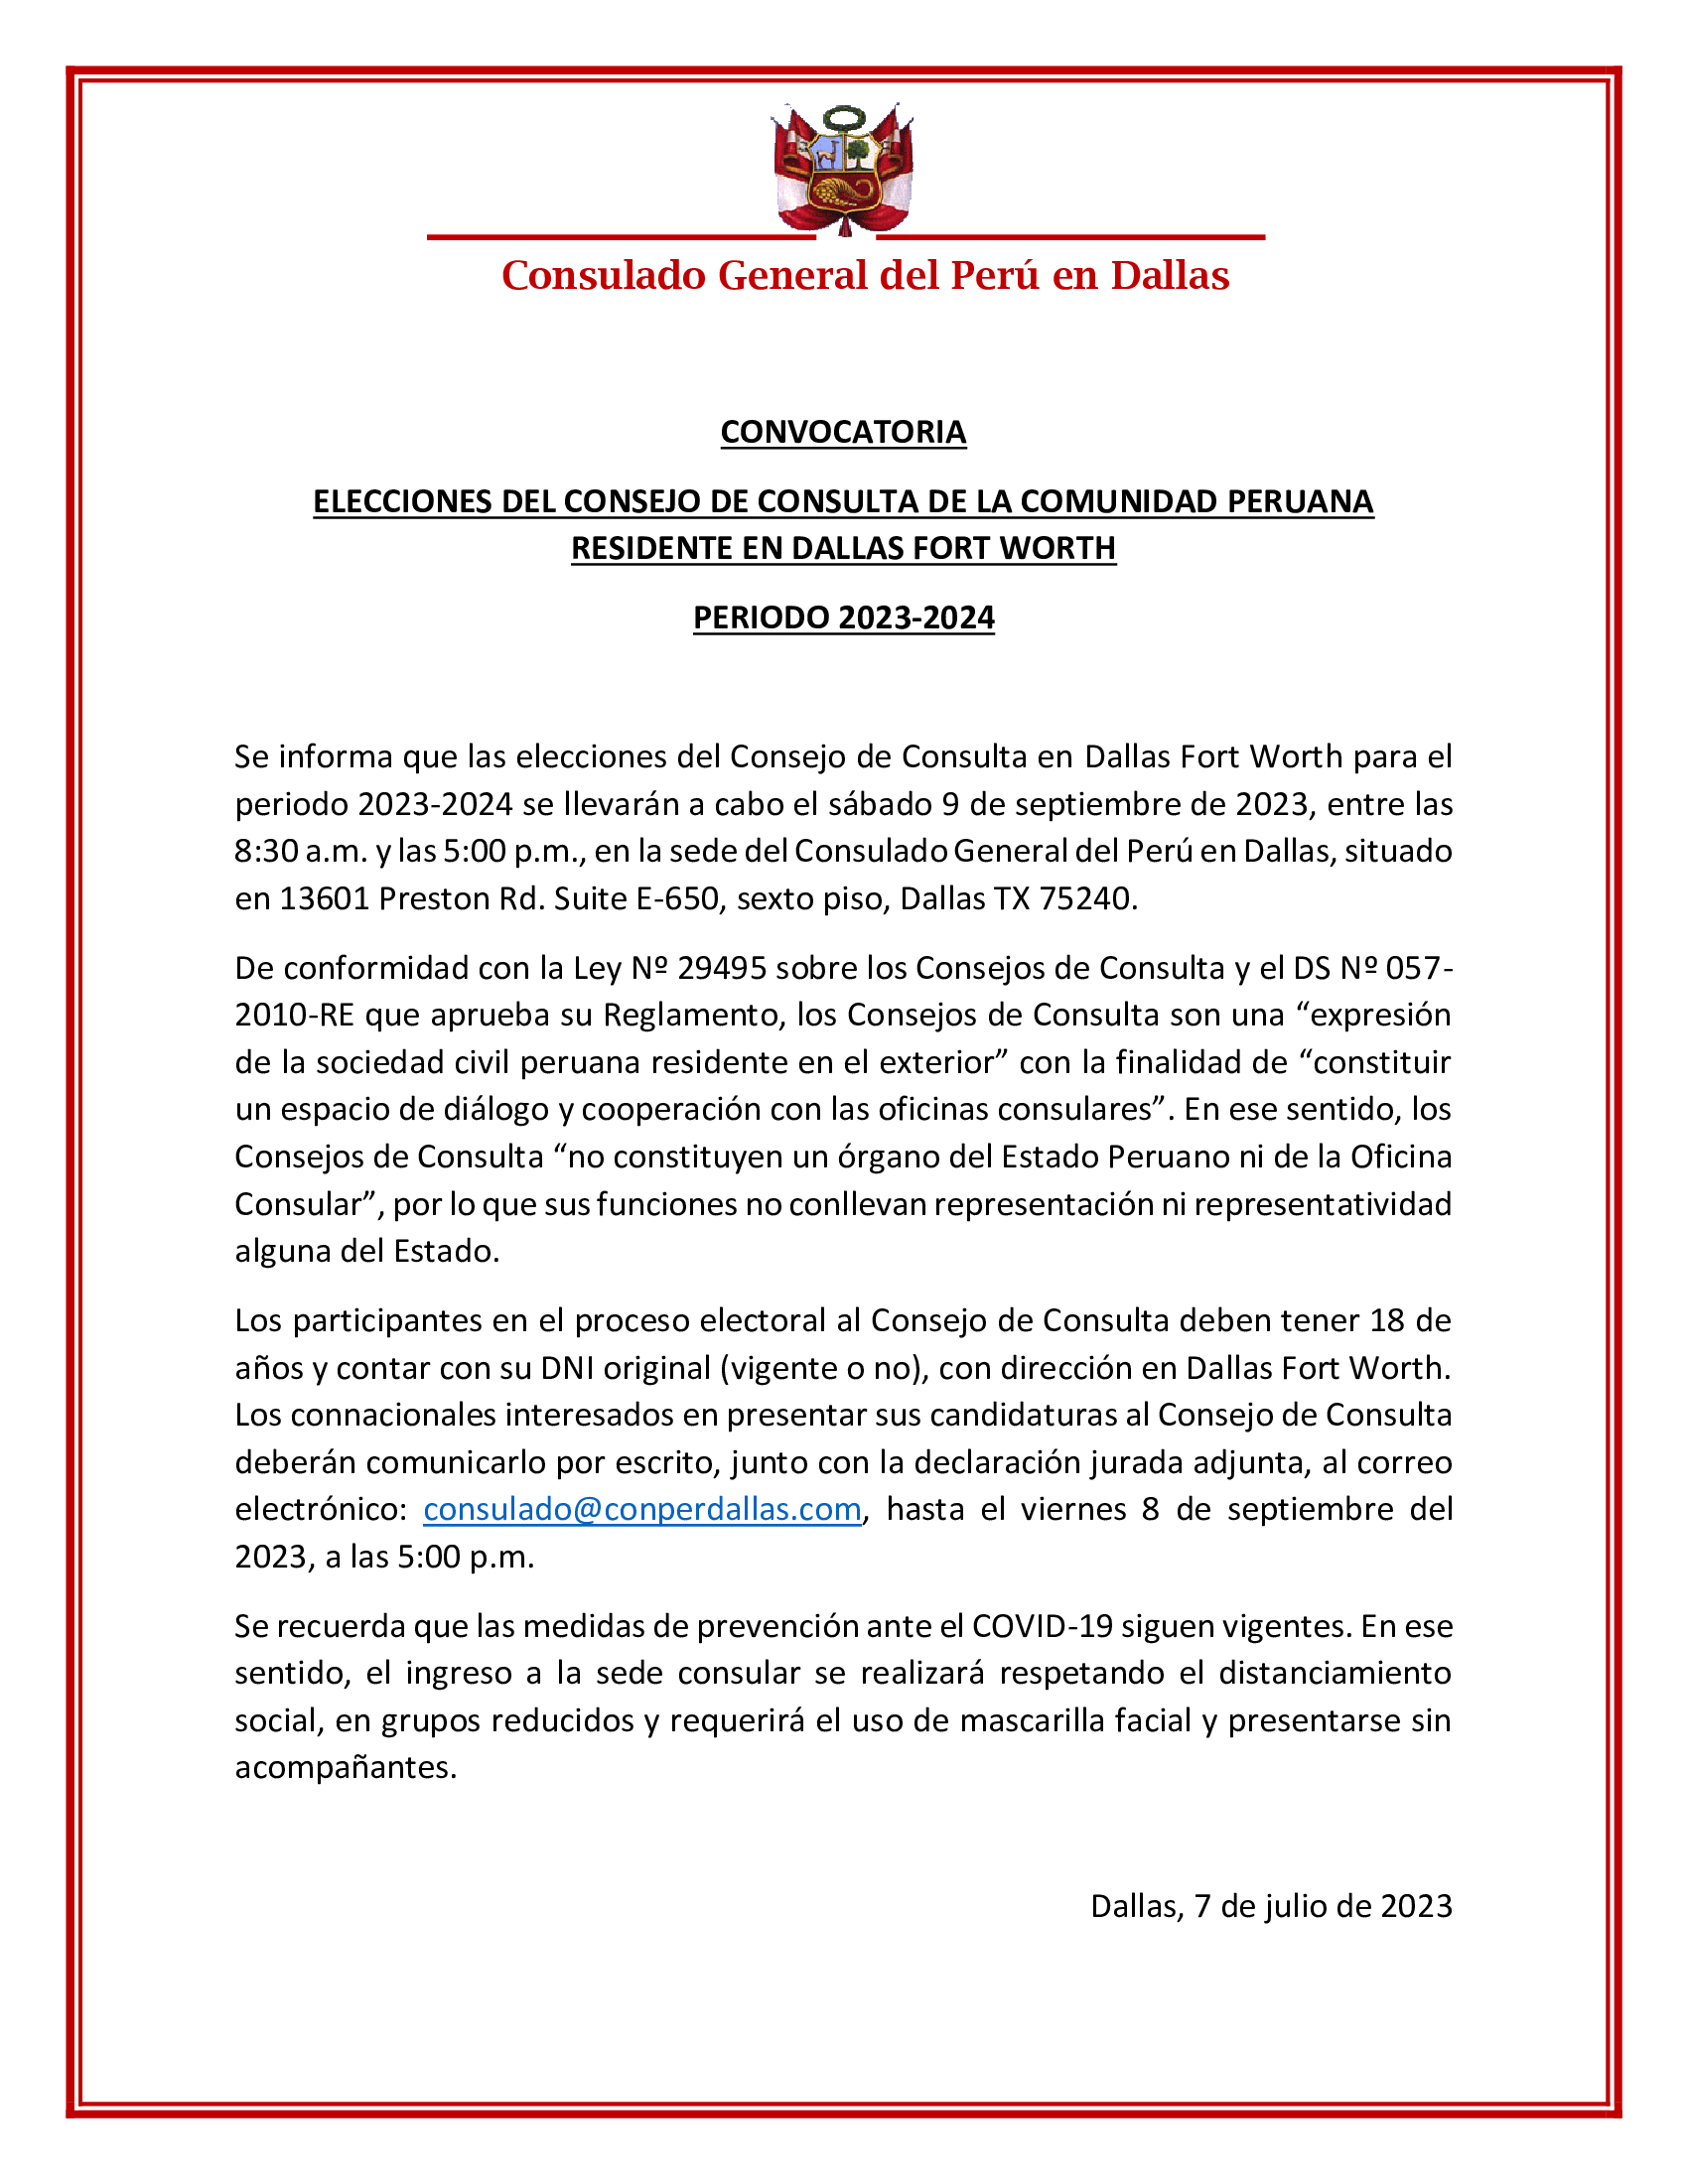 ELECCIONES-DEL-CONSEJO-DE-CONSULTA-DE-LA-COMUNIDAD-PERUANA-RESIDENTE-EN-DALLAS-FORT-WORTH_2023-2024.jpg